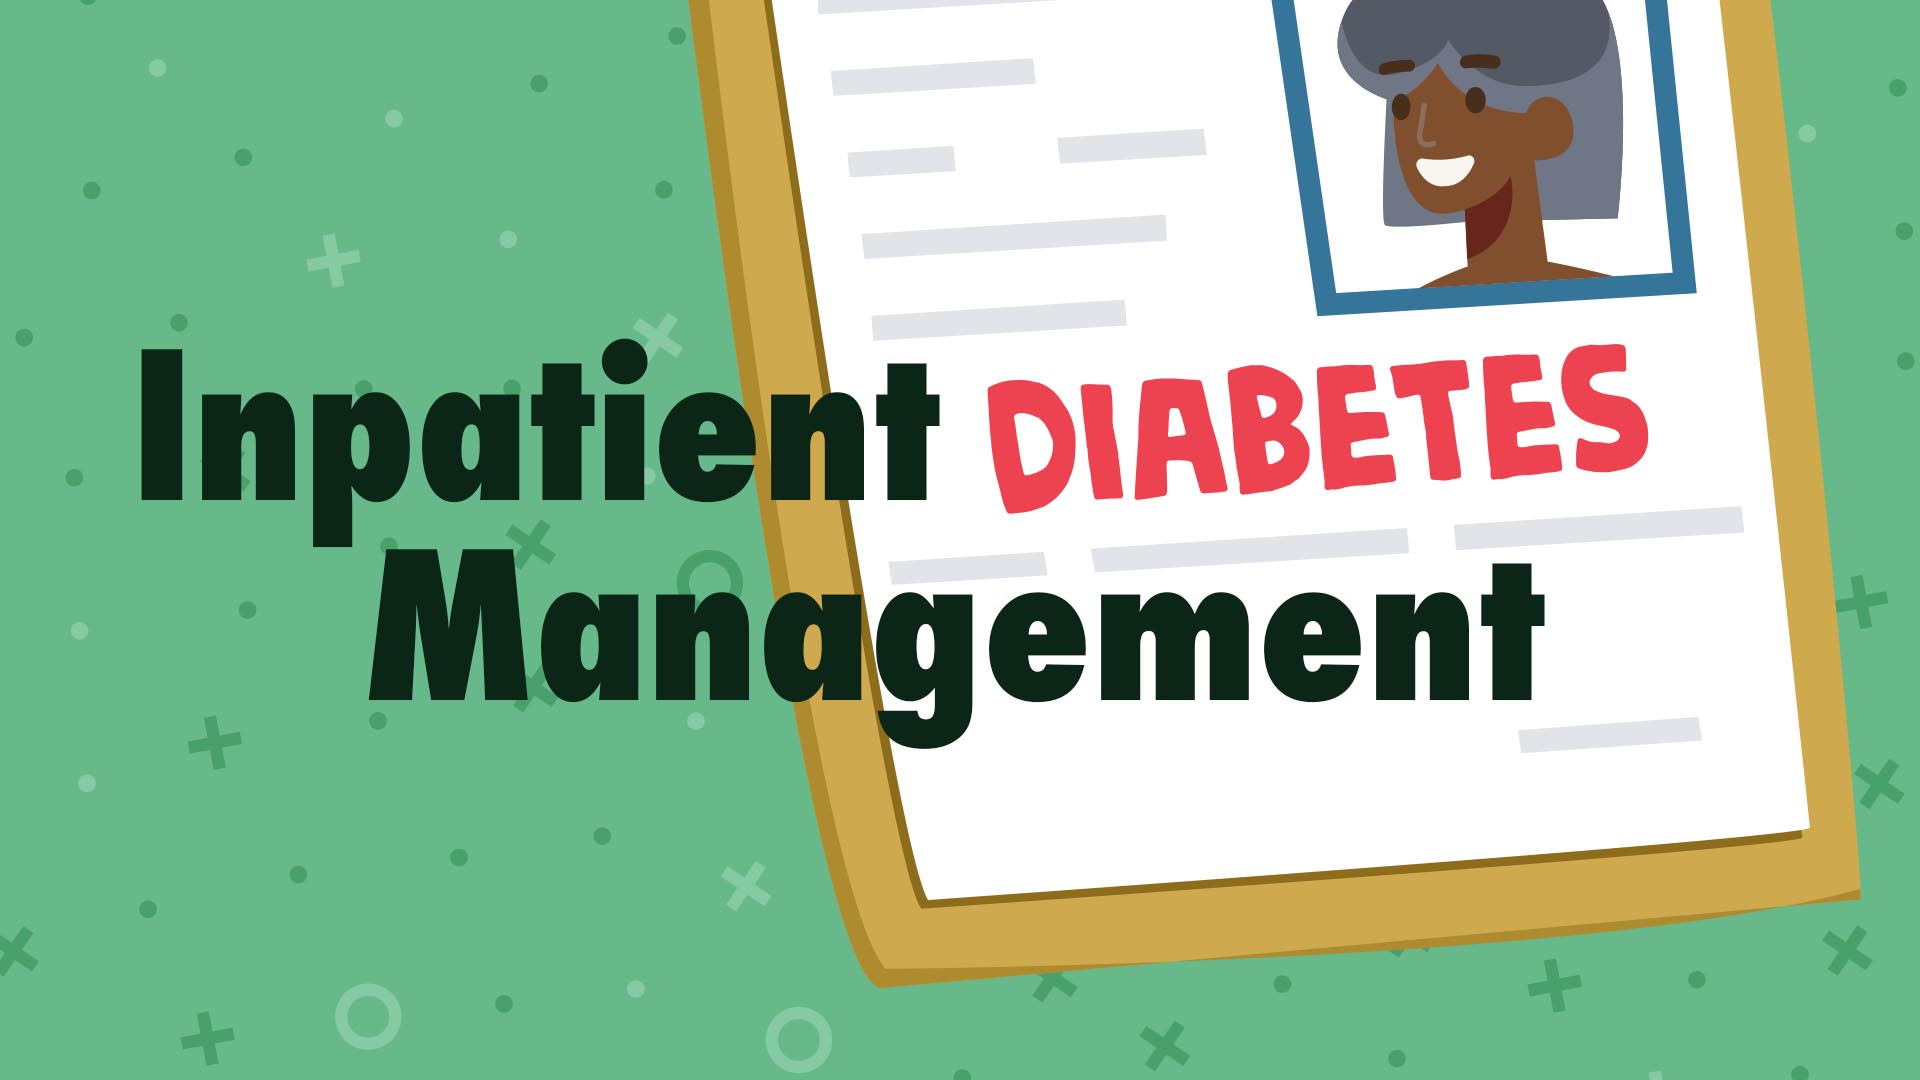 Cover image for: Inpatient Diabetes Management